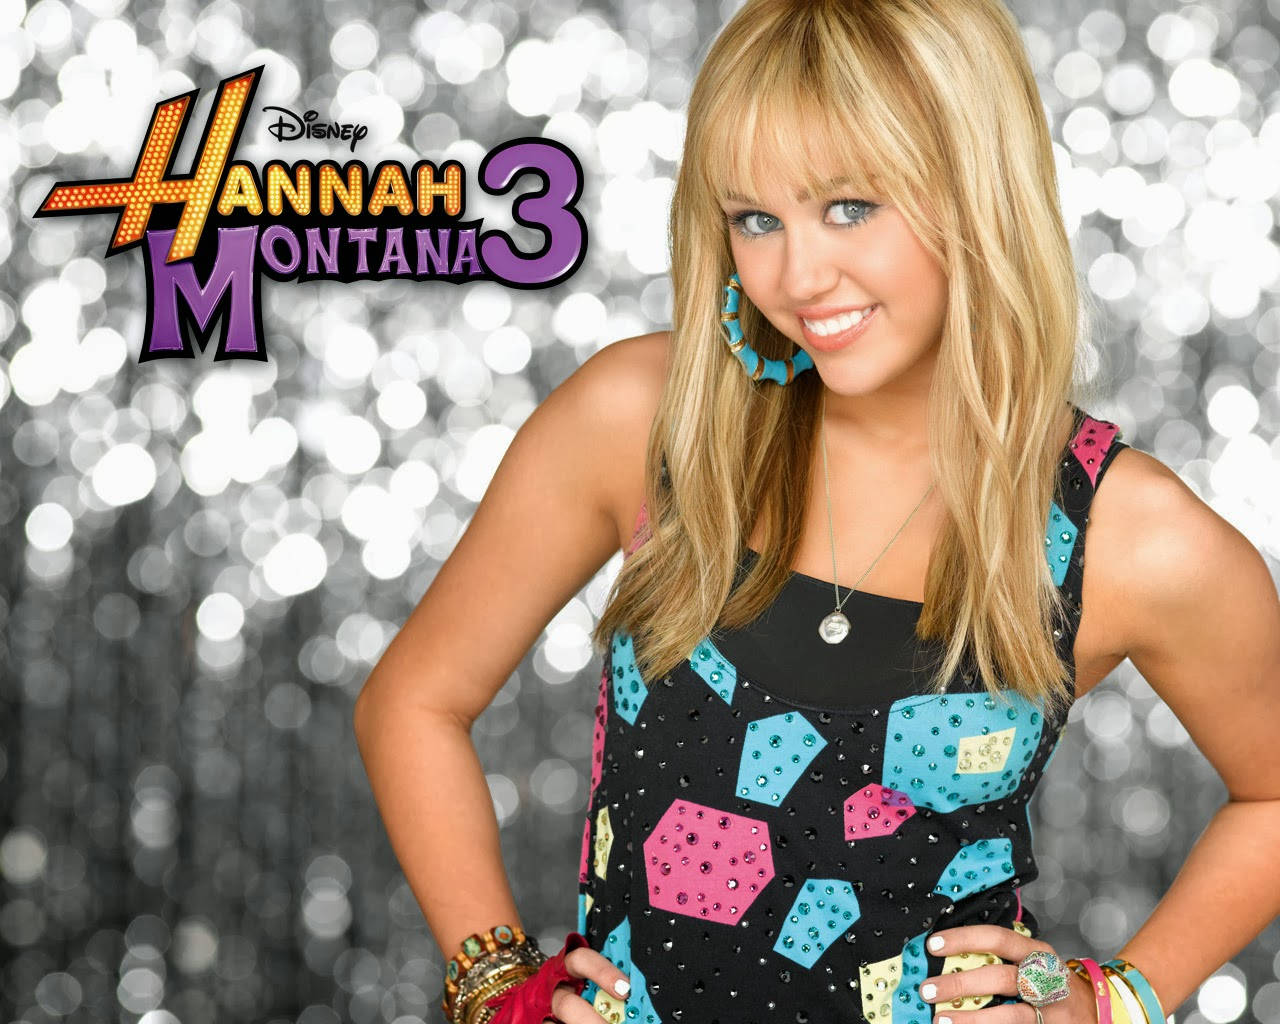 Hannah Montana Season 3 Wallpaper